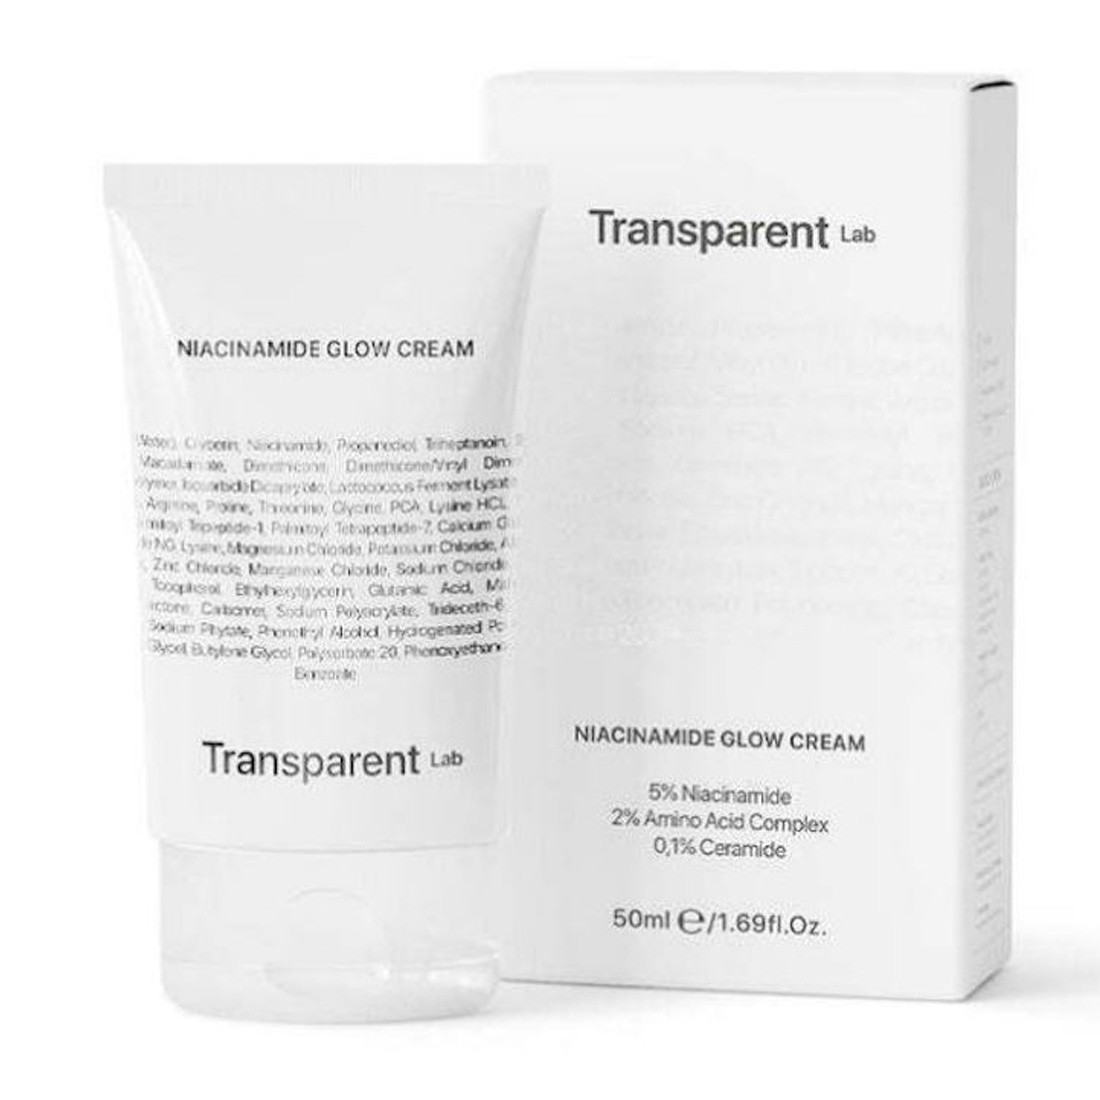 Transperent Lab Niacinamide Glow Cream - Осветляющий крем-гель для лица